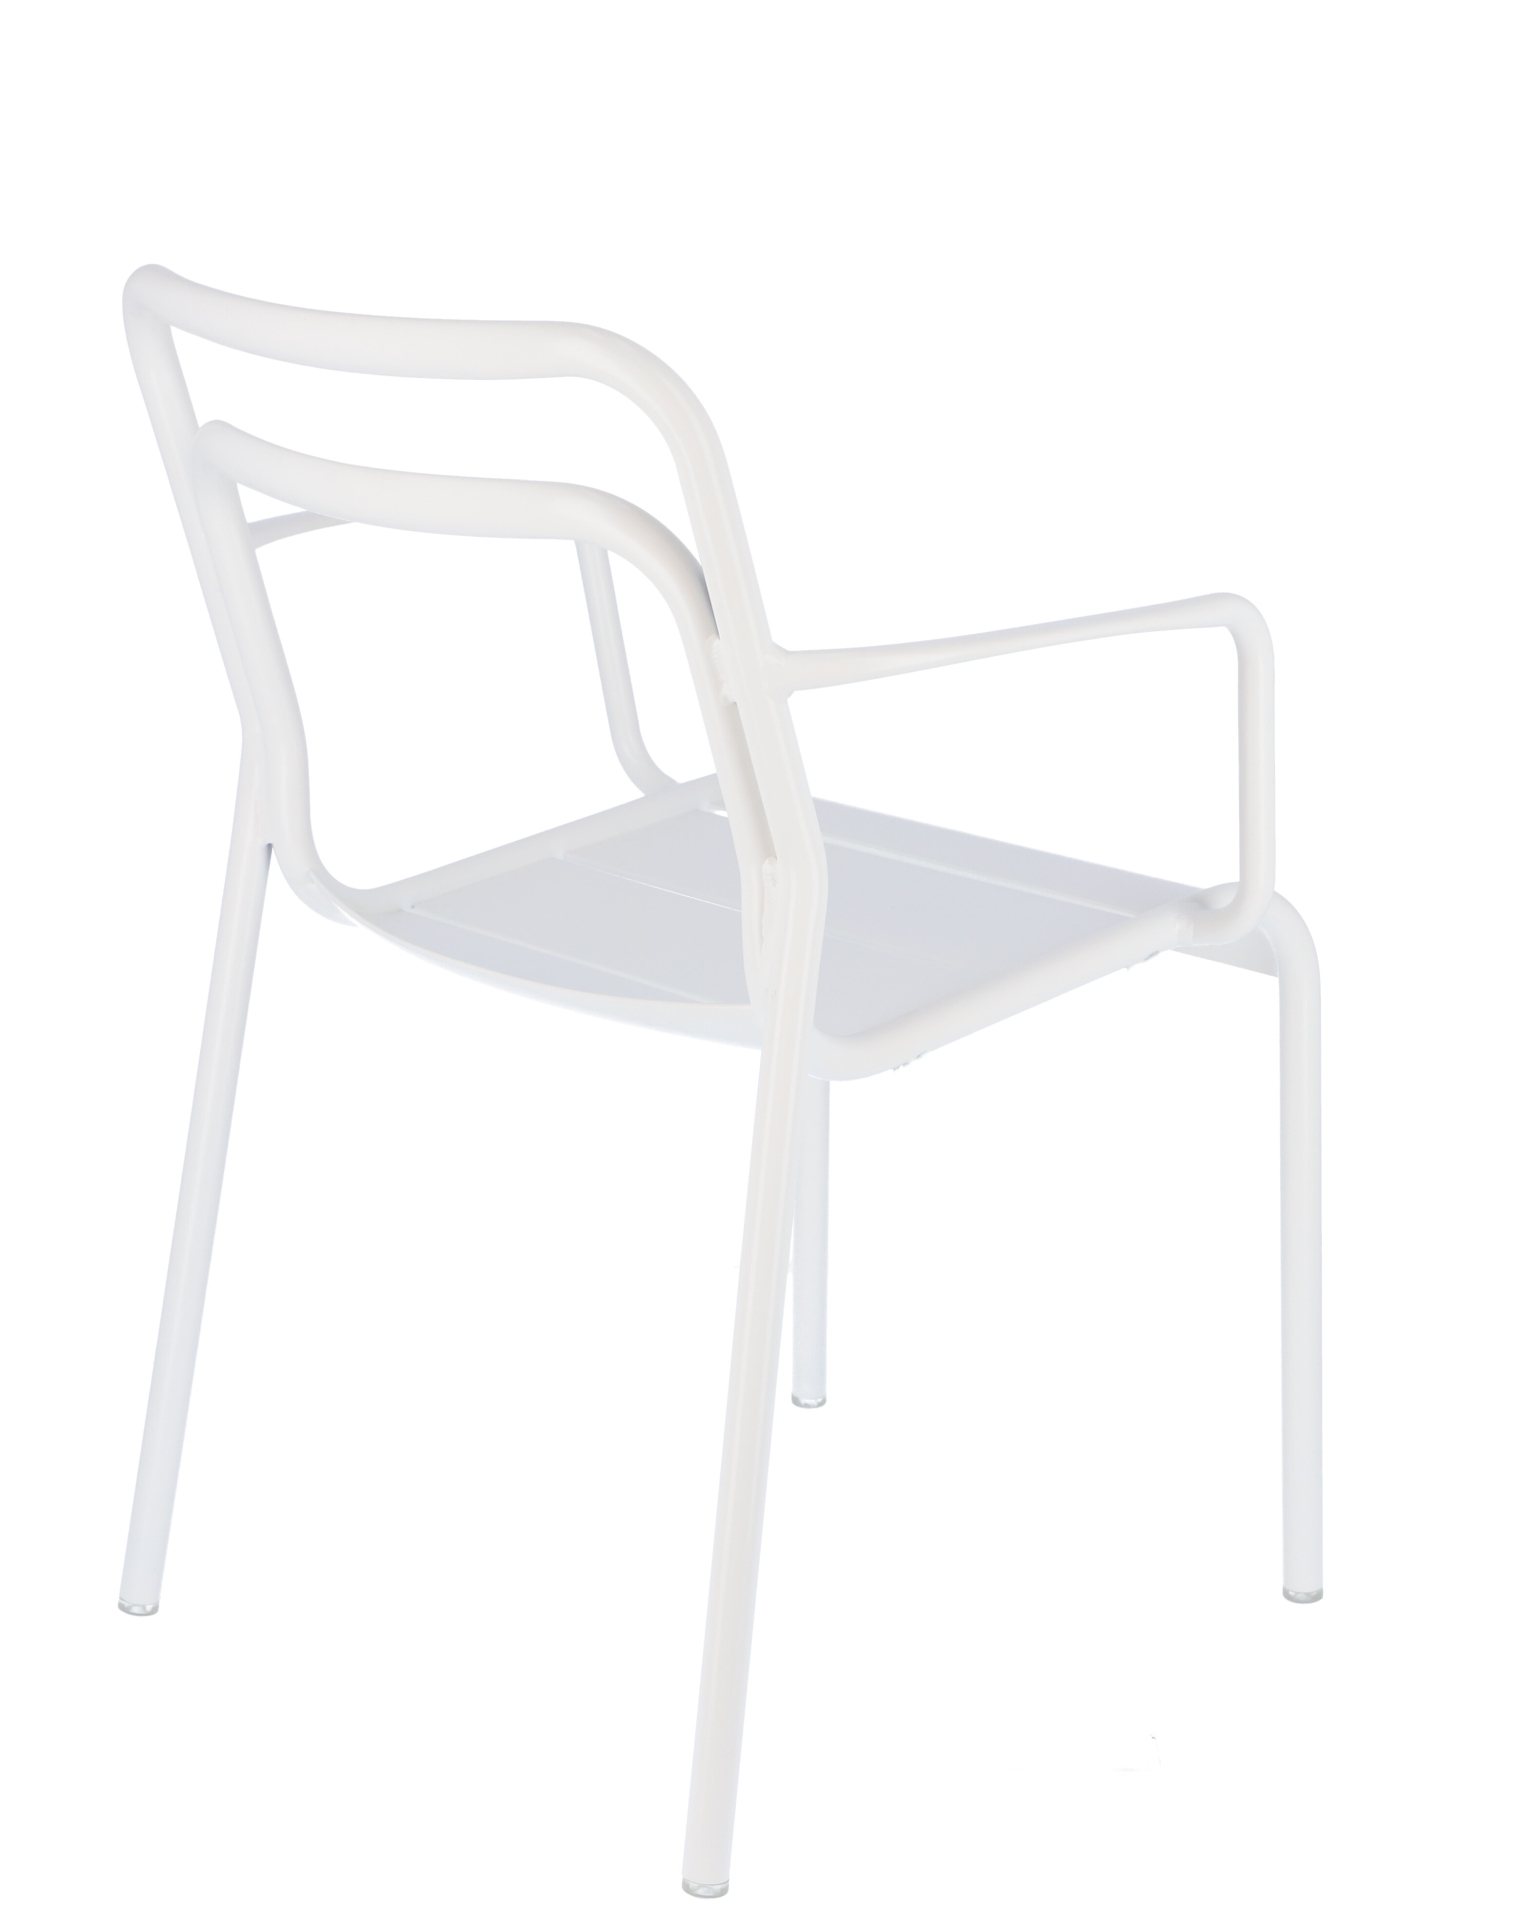 Der moderne Gartensessel Live wurde aus Aluminium hergestellt. Designet wurde er von der Marke Jan Kurtz. Die Farbe des Sessels ist Weiß.